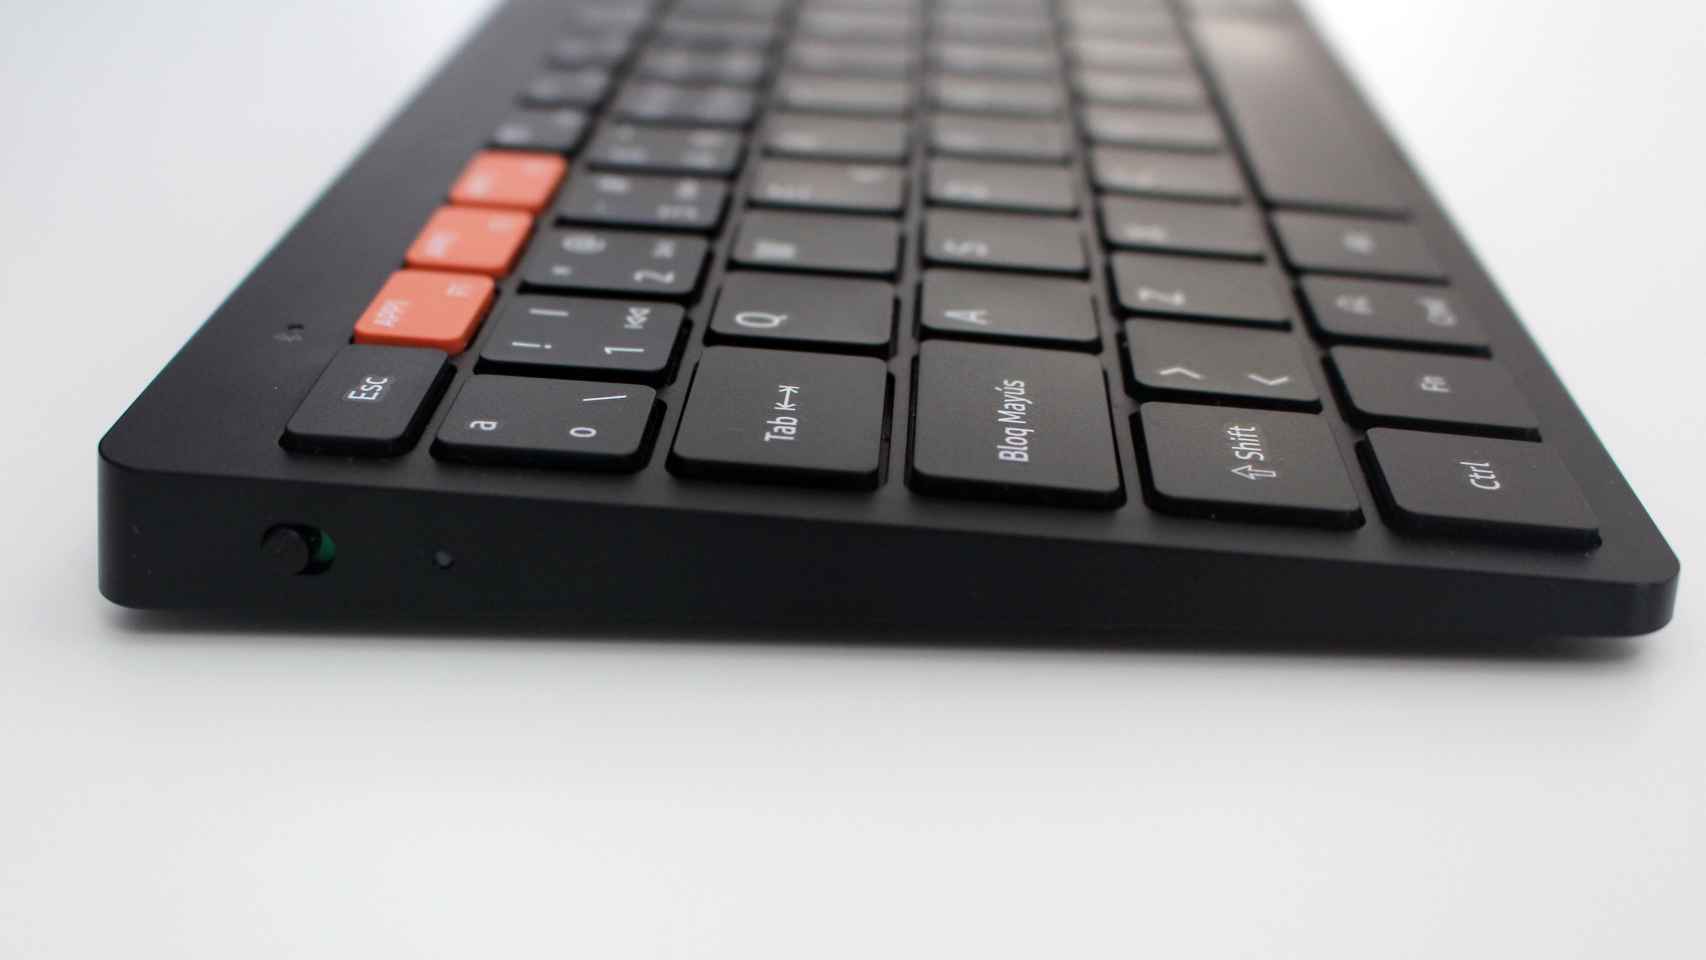 El lateral con el botón de encendido del Samsung Smart Keyboard Trio 500.